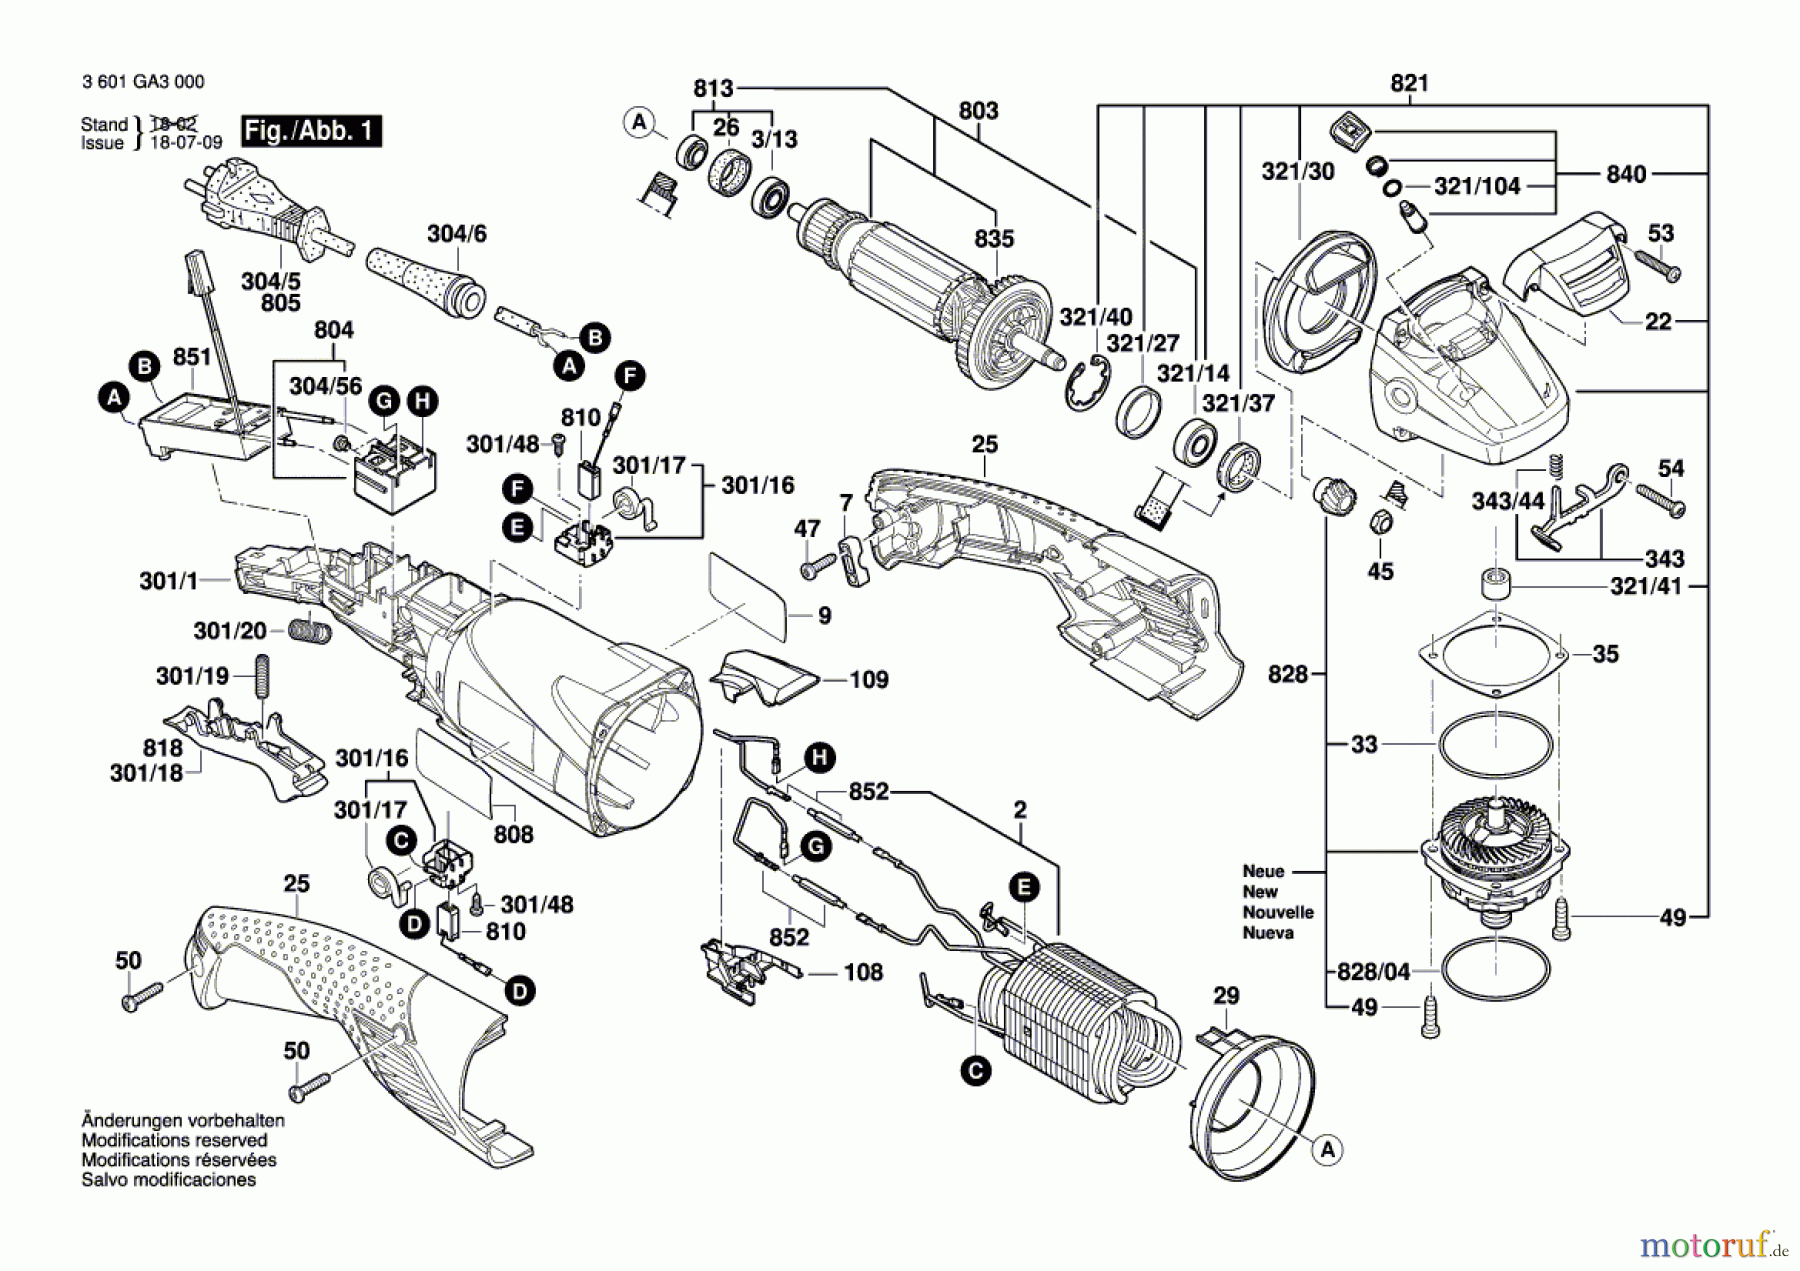  Bosch Werkzeug Winkelschleifer GWS 18-150 L Seite 1